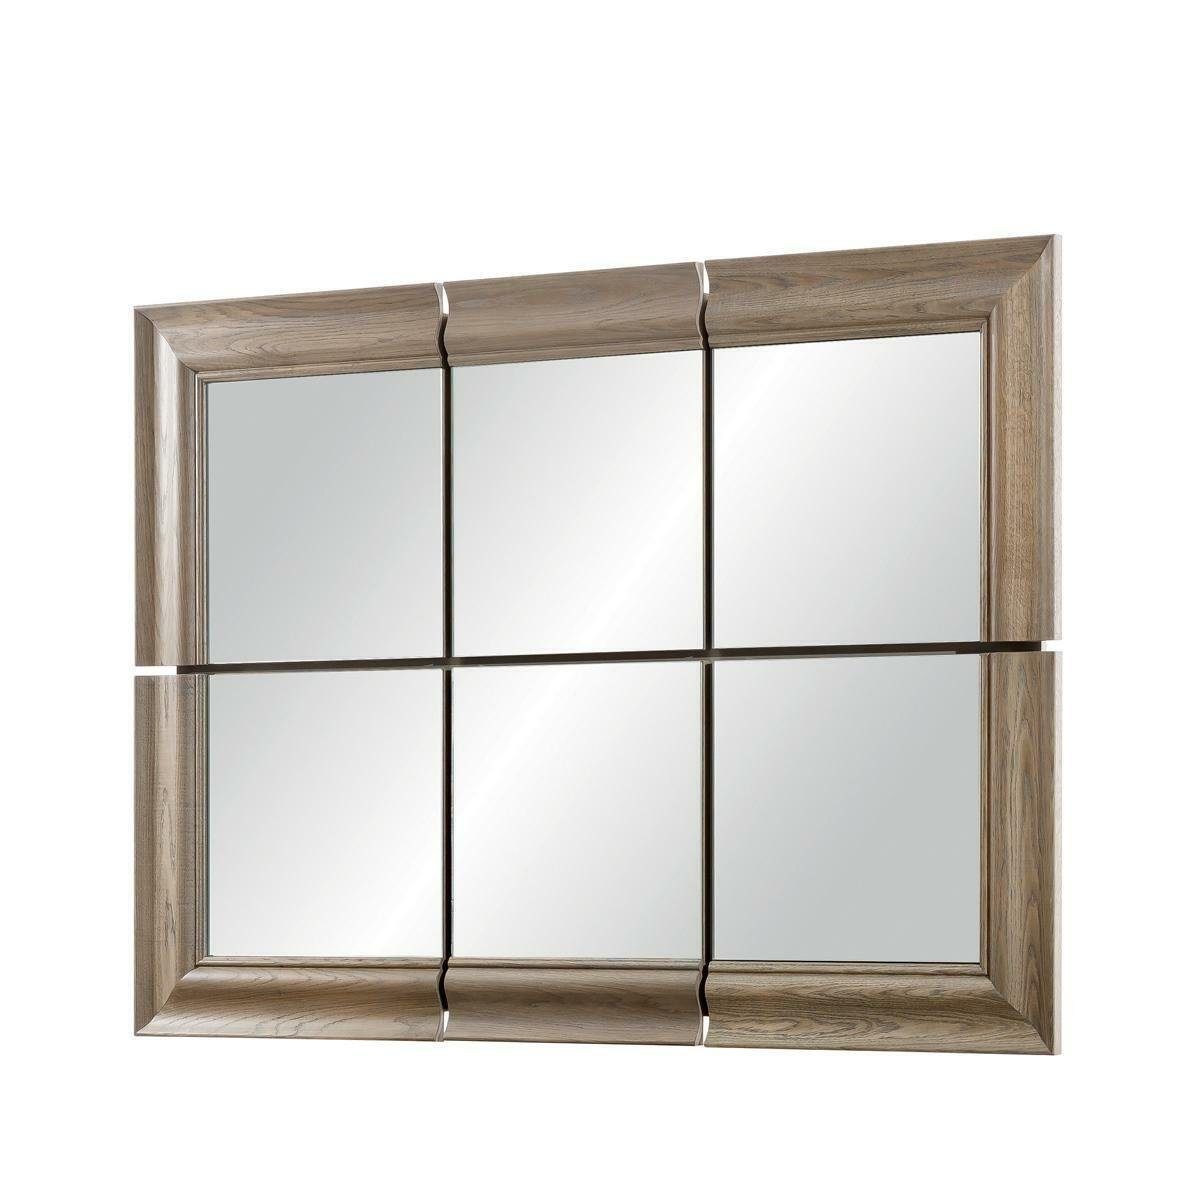 JVmoebel Wandspiegel Moderner Großer Spiegel Wandspiegel Echt Holz Rahmen Hängespiegel